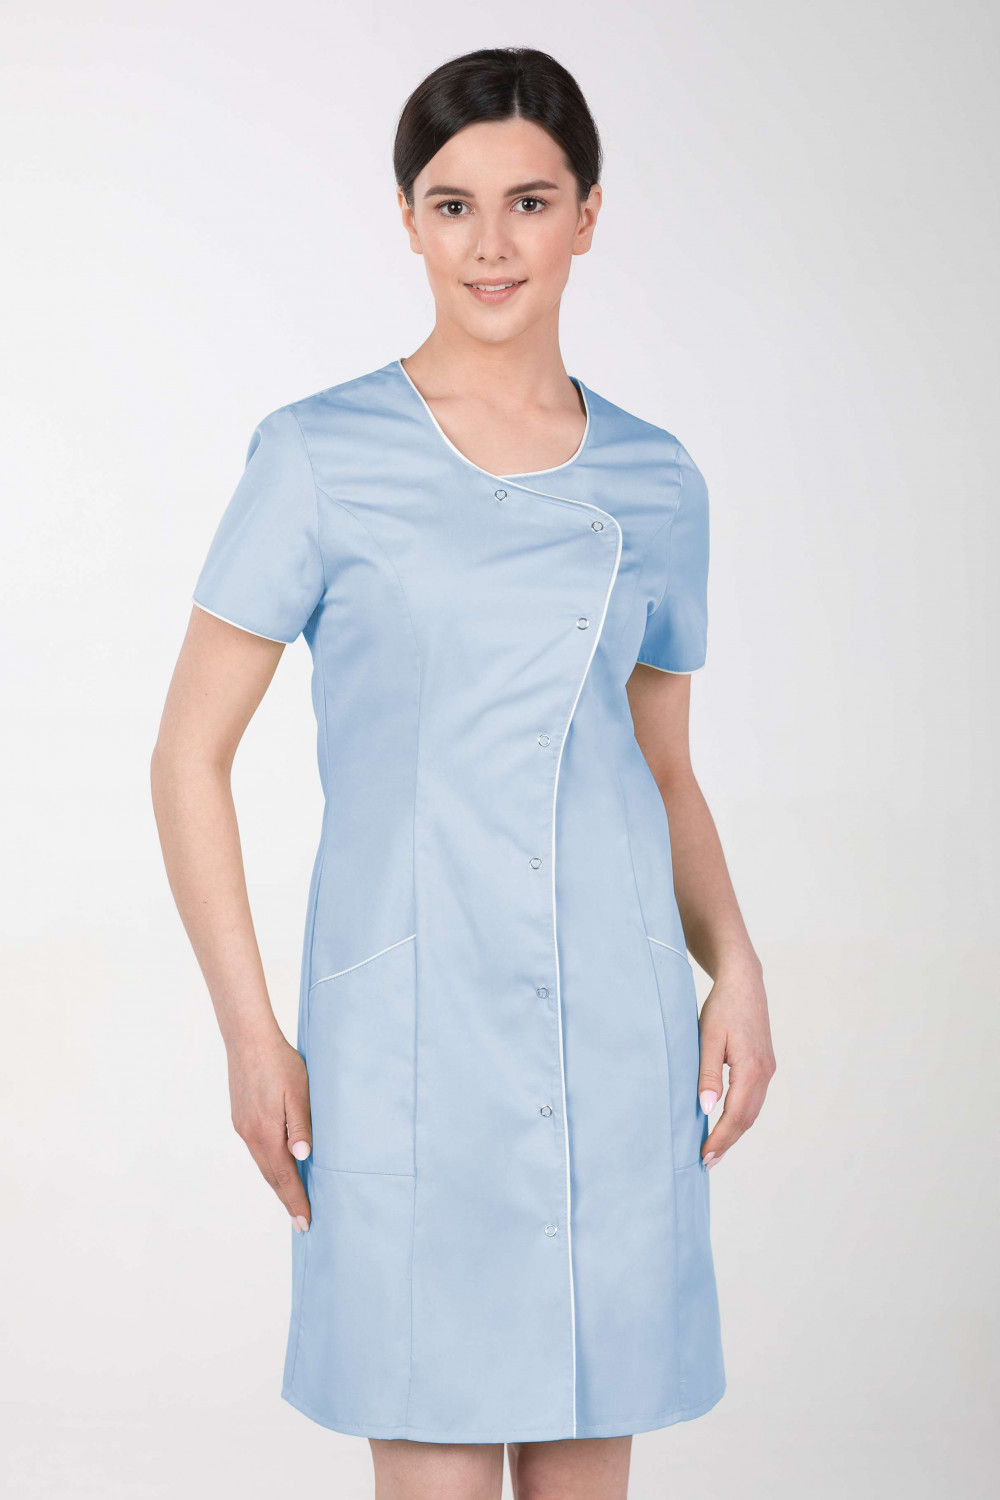 Fartuch sukiennka medyczna kosmetyczna damska błękitna M-342